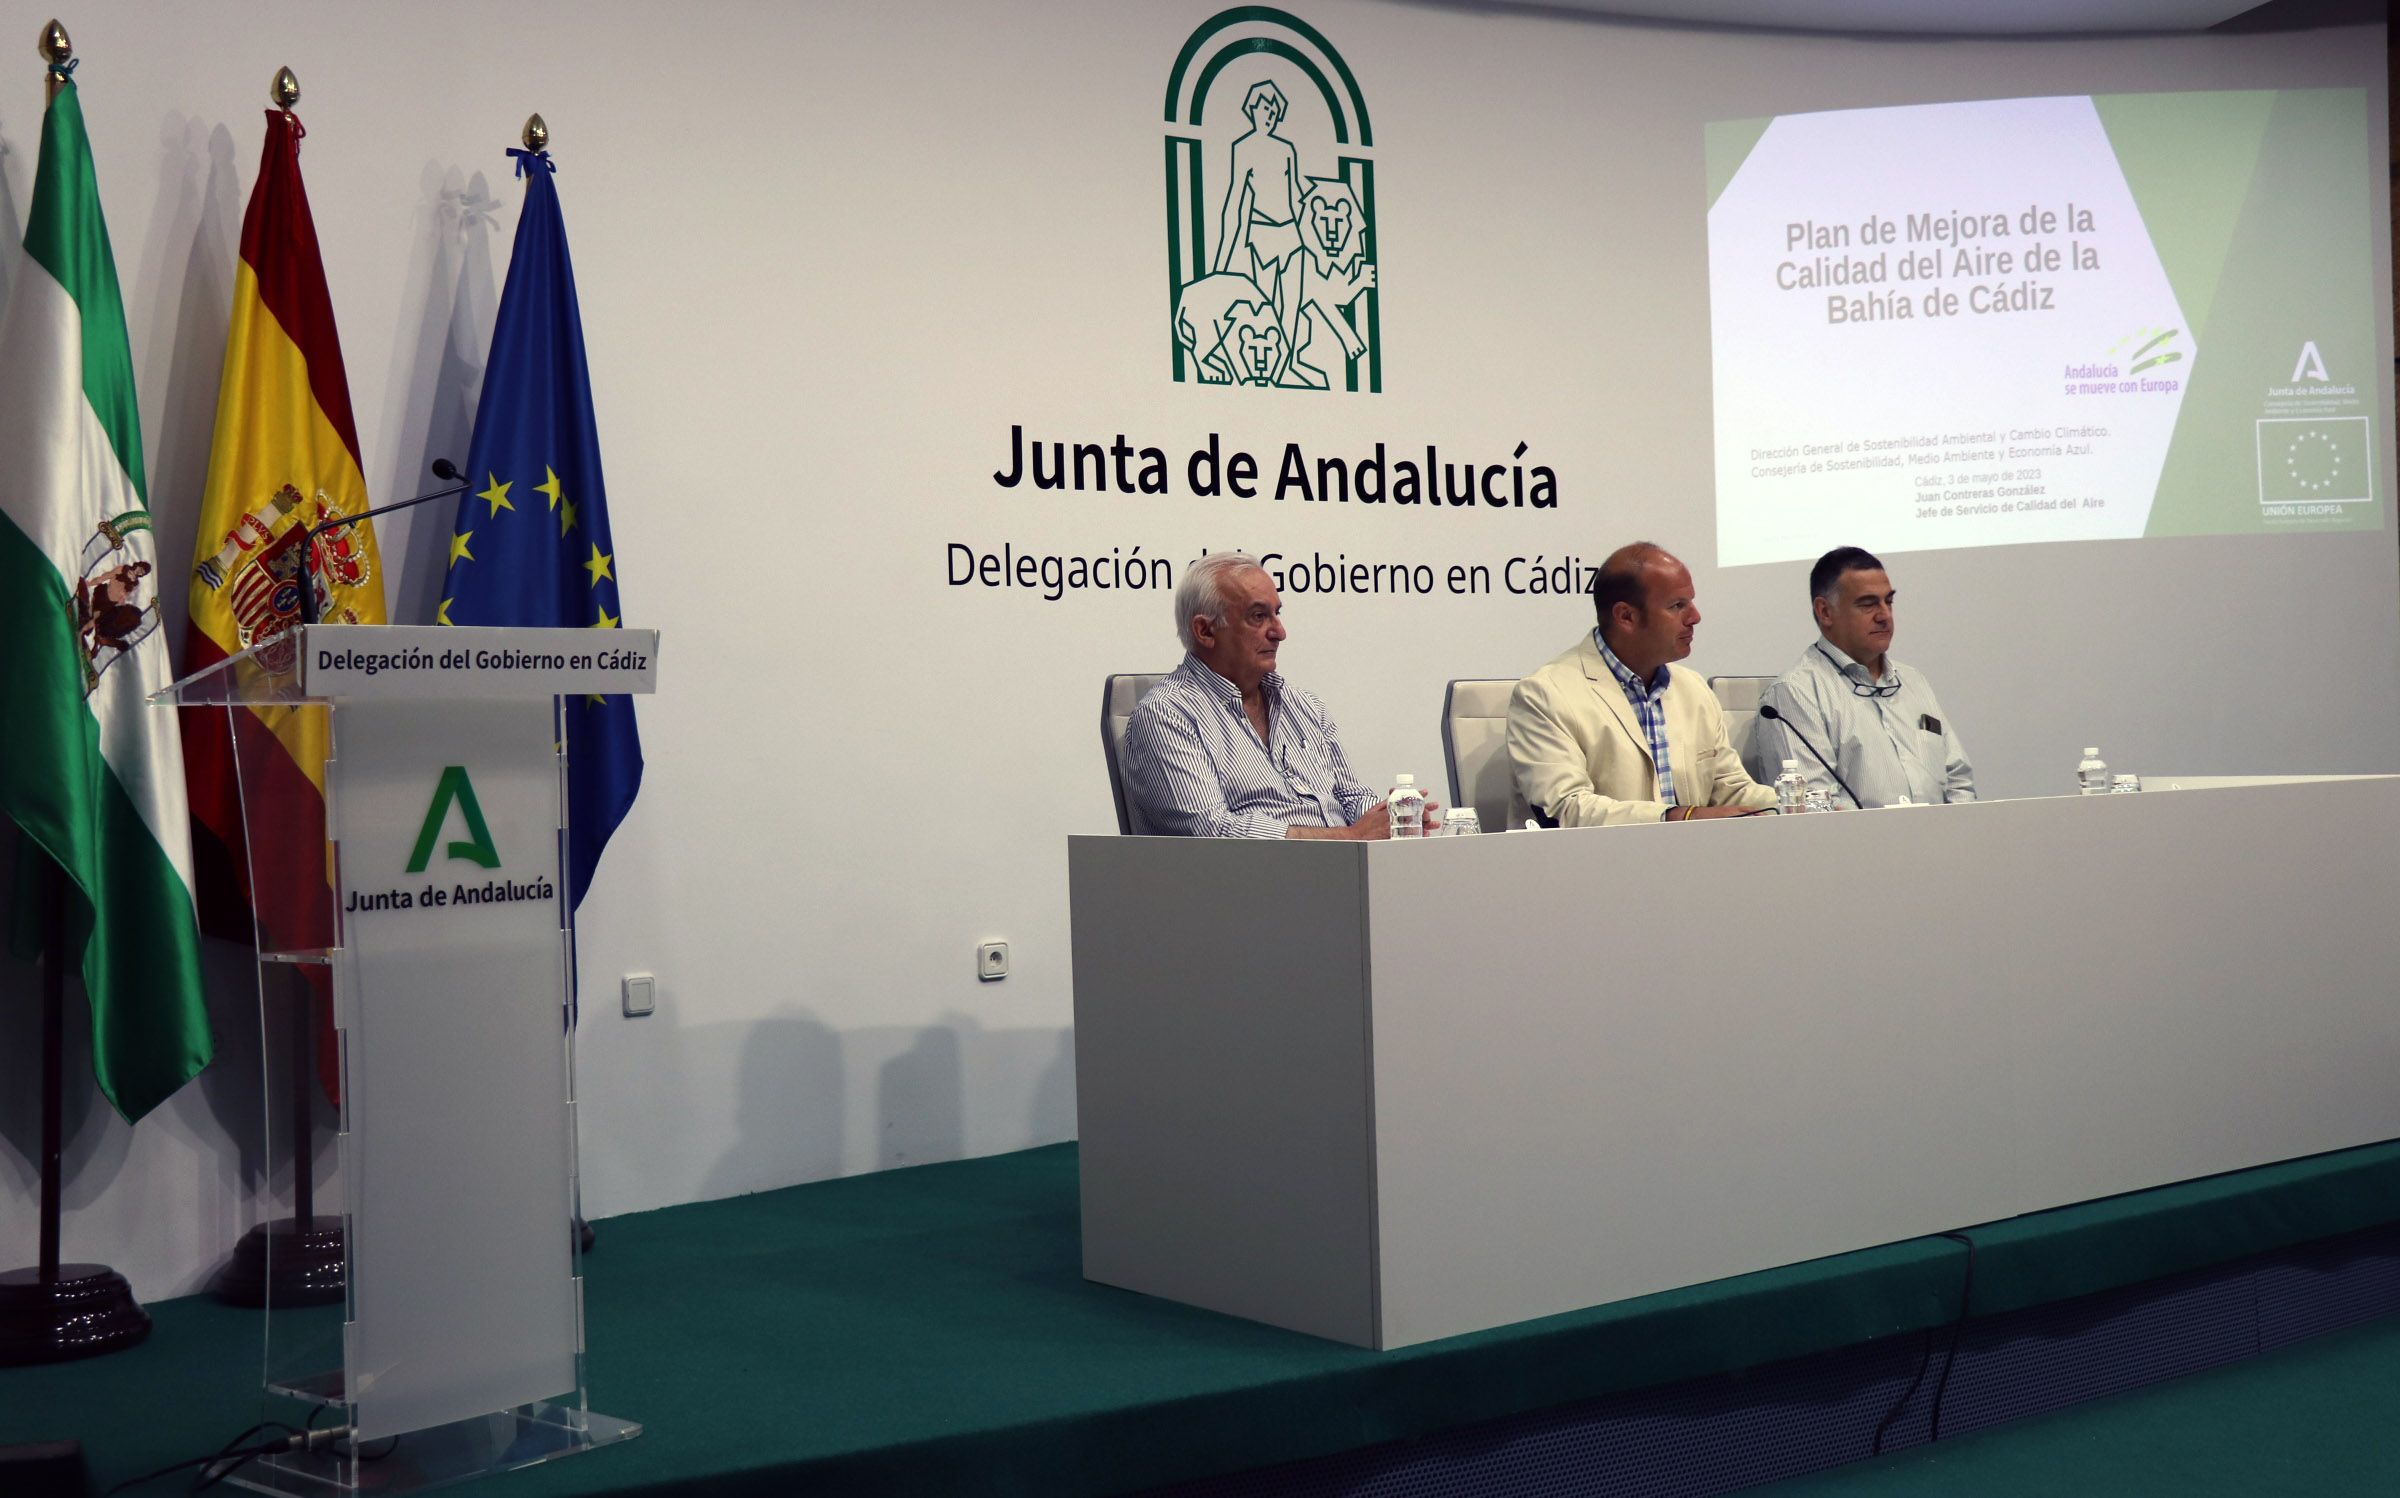 Presidencia del encuentro Plan Mejora Calidad Aire de la bahía de Cádiz.